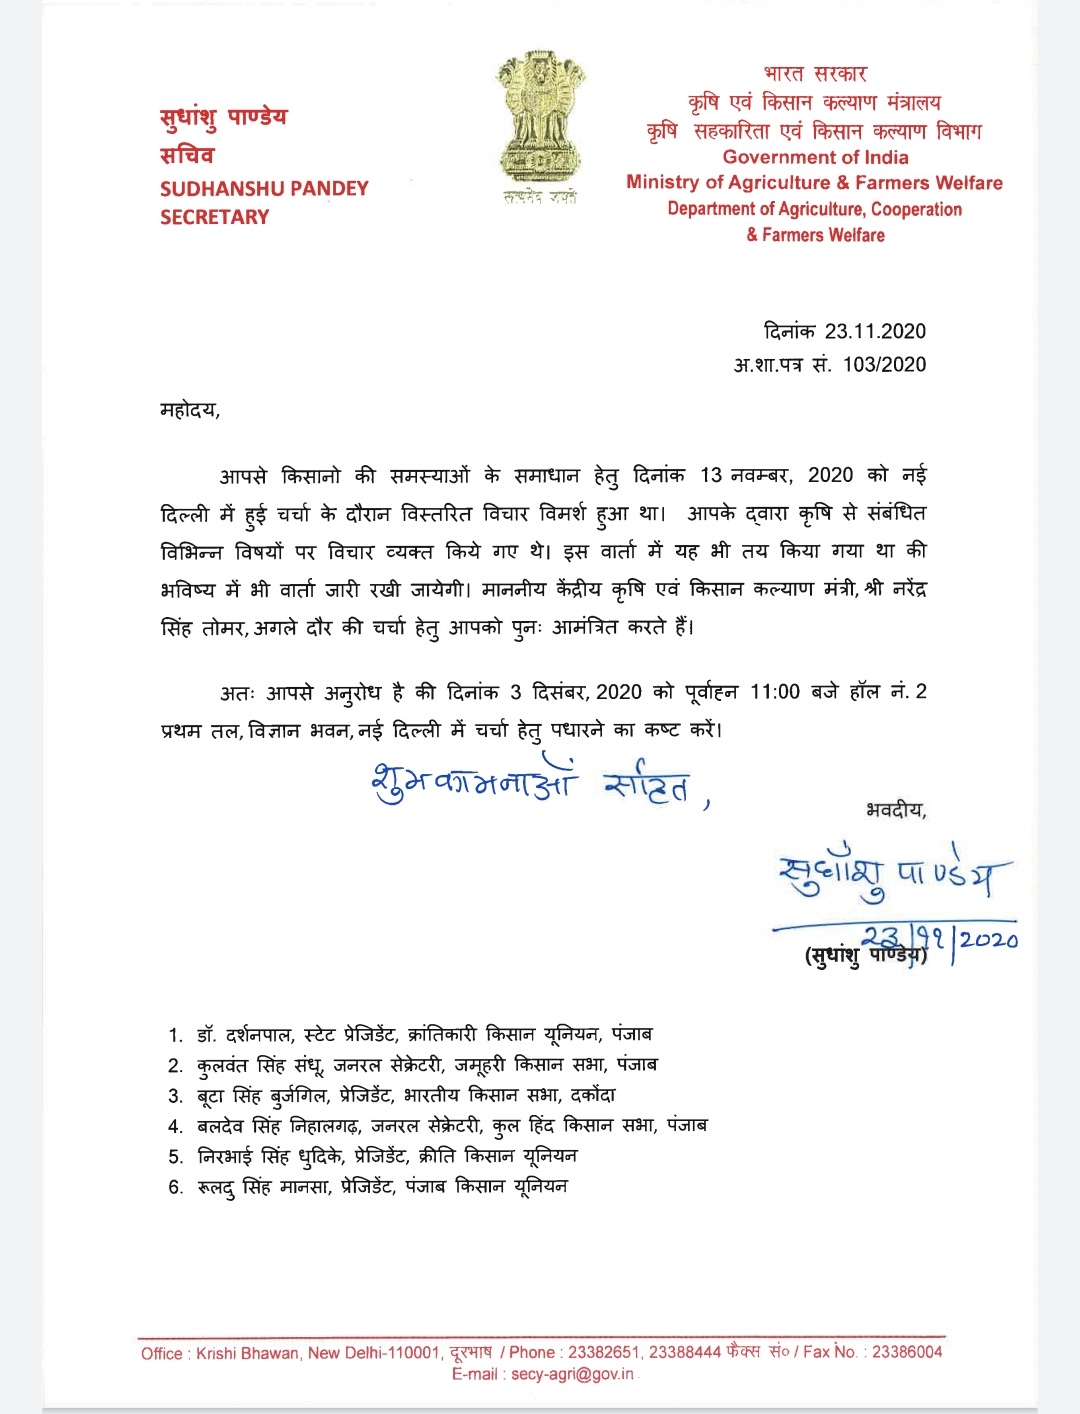 A copy of the government's invite